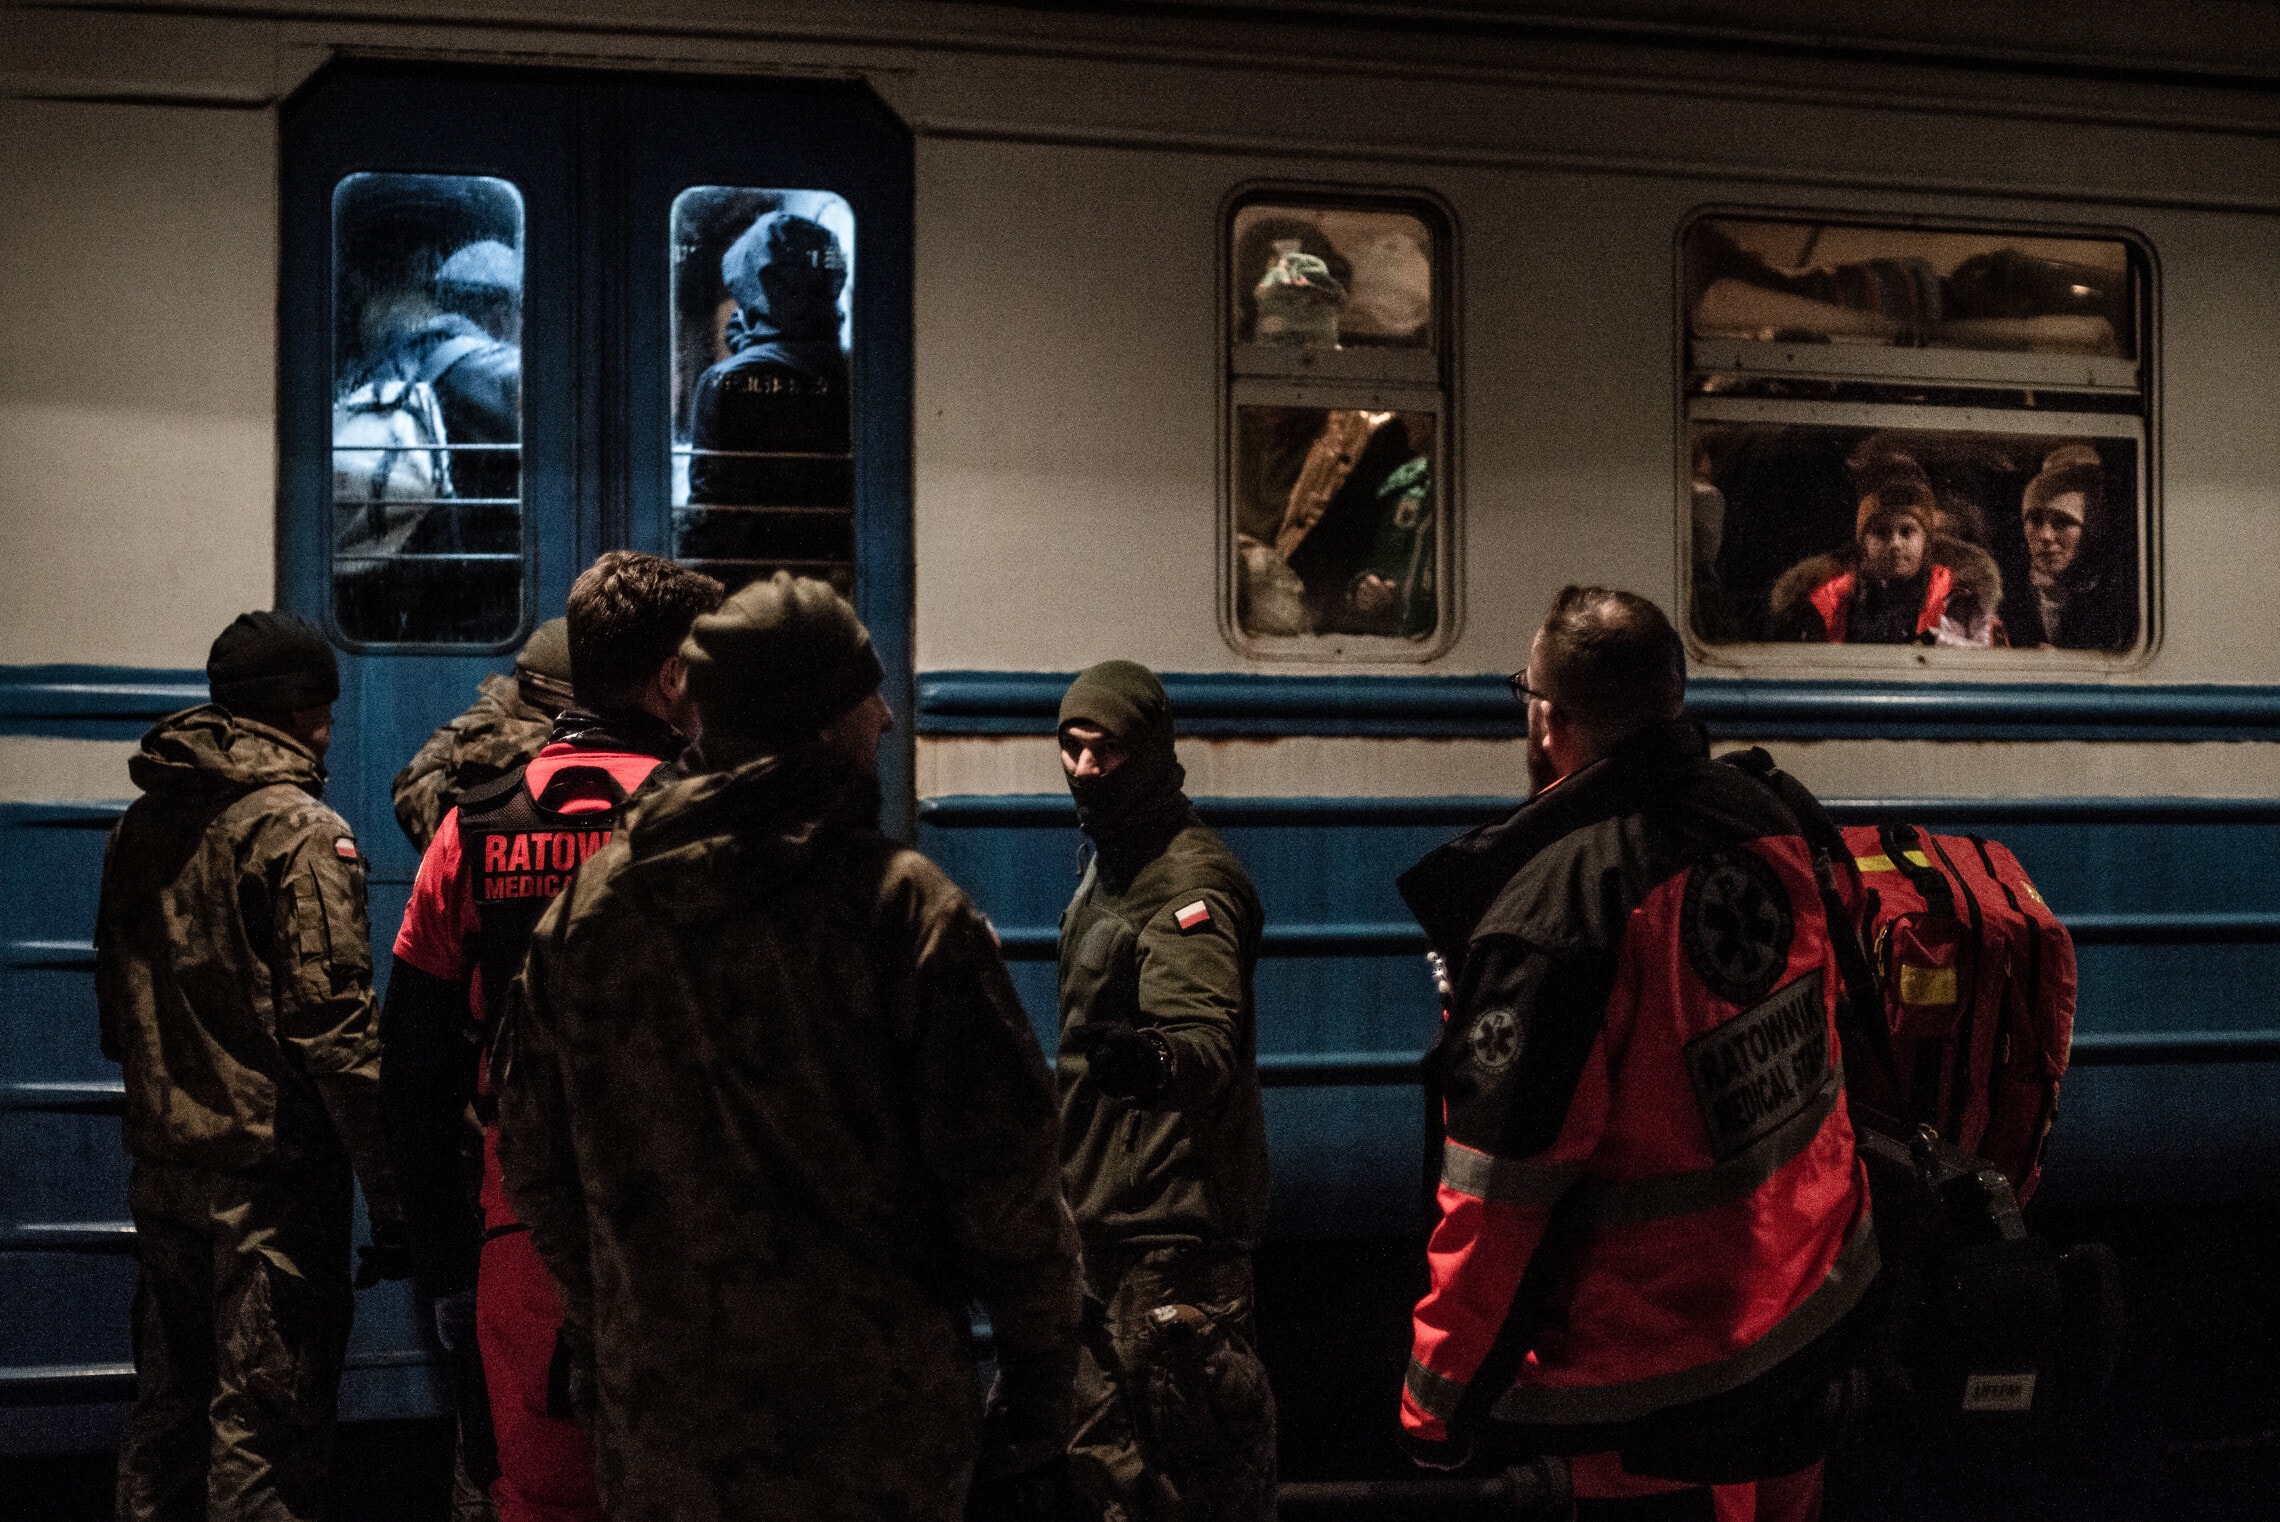 צוות רפואת חירום בכניסה לקרון רכבת בתחנה פשמישל, פולין, לאחר שנקרא לטפל בפליטה בת שנתיים שאיבדה את הכרה. פברואר 2022 (צילום: גילעד שדה)